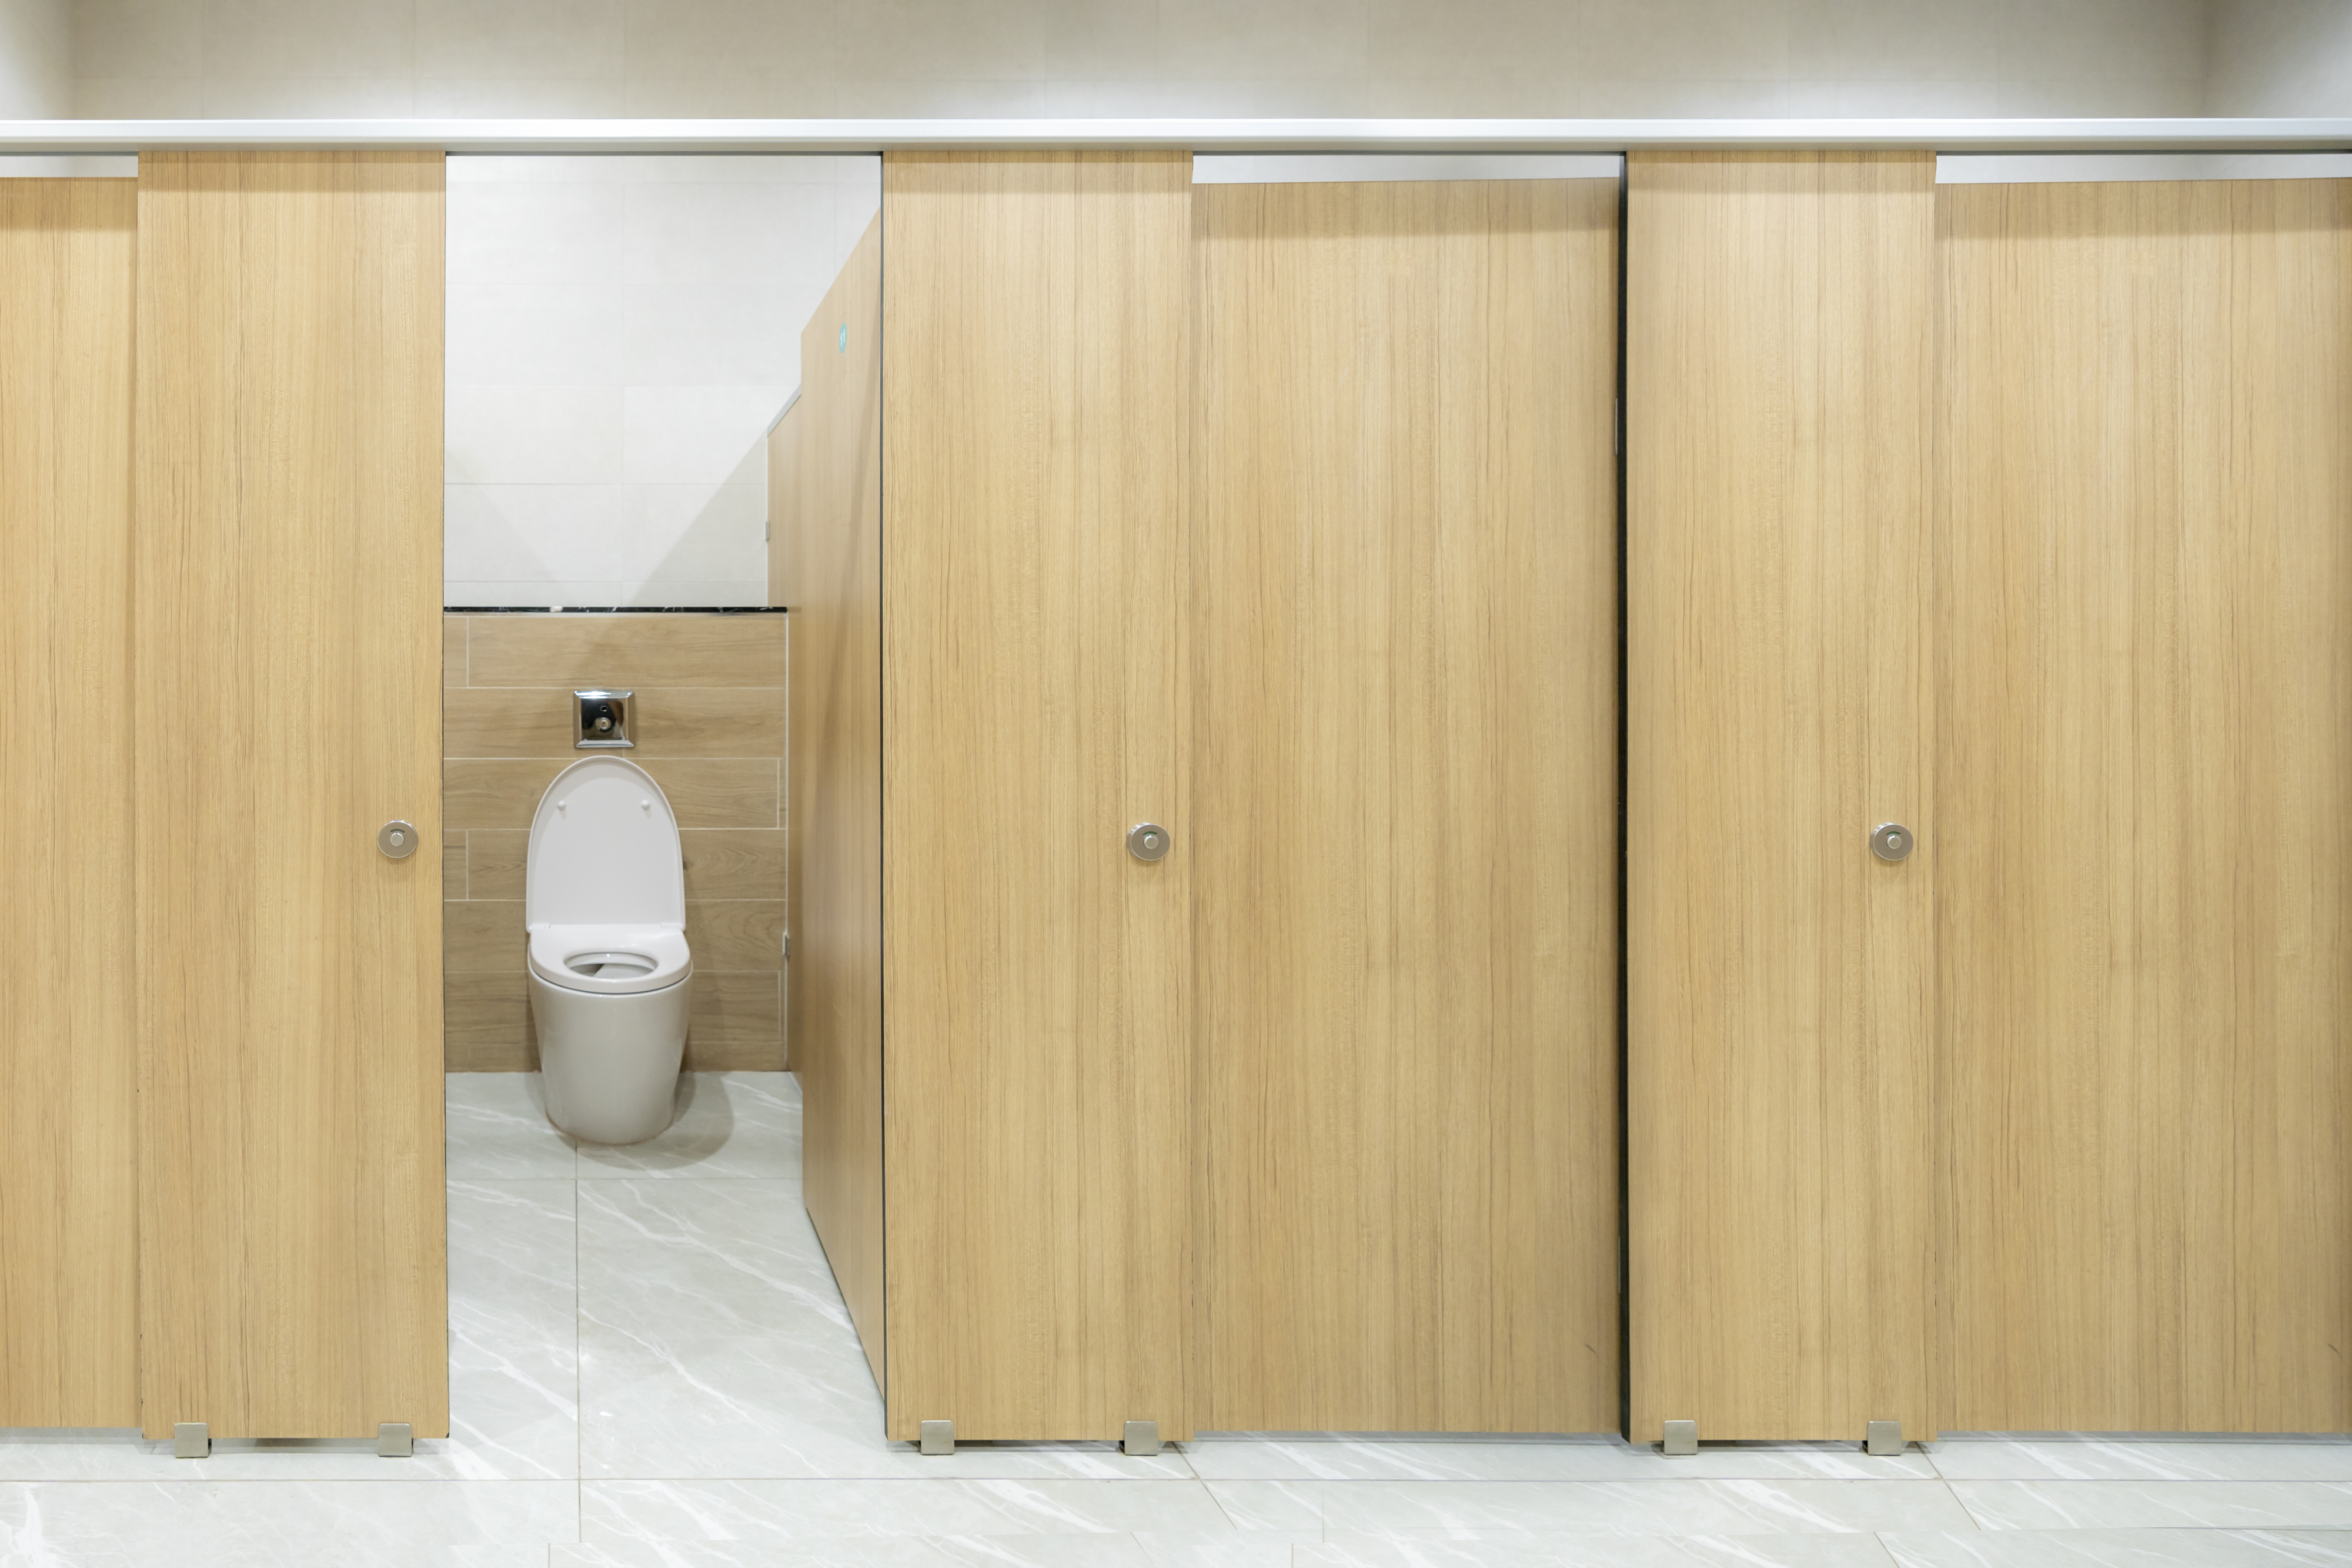 Open bathroom stall door reveals a toilet